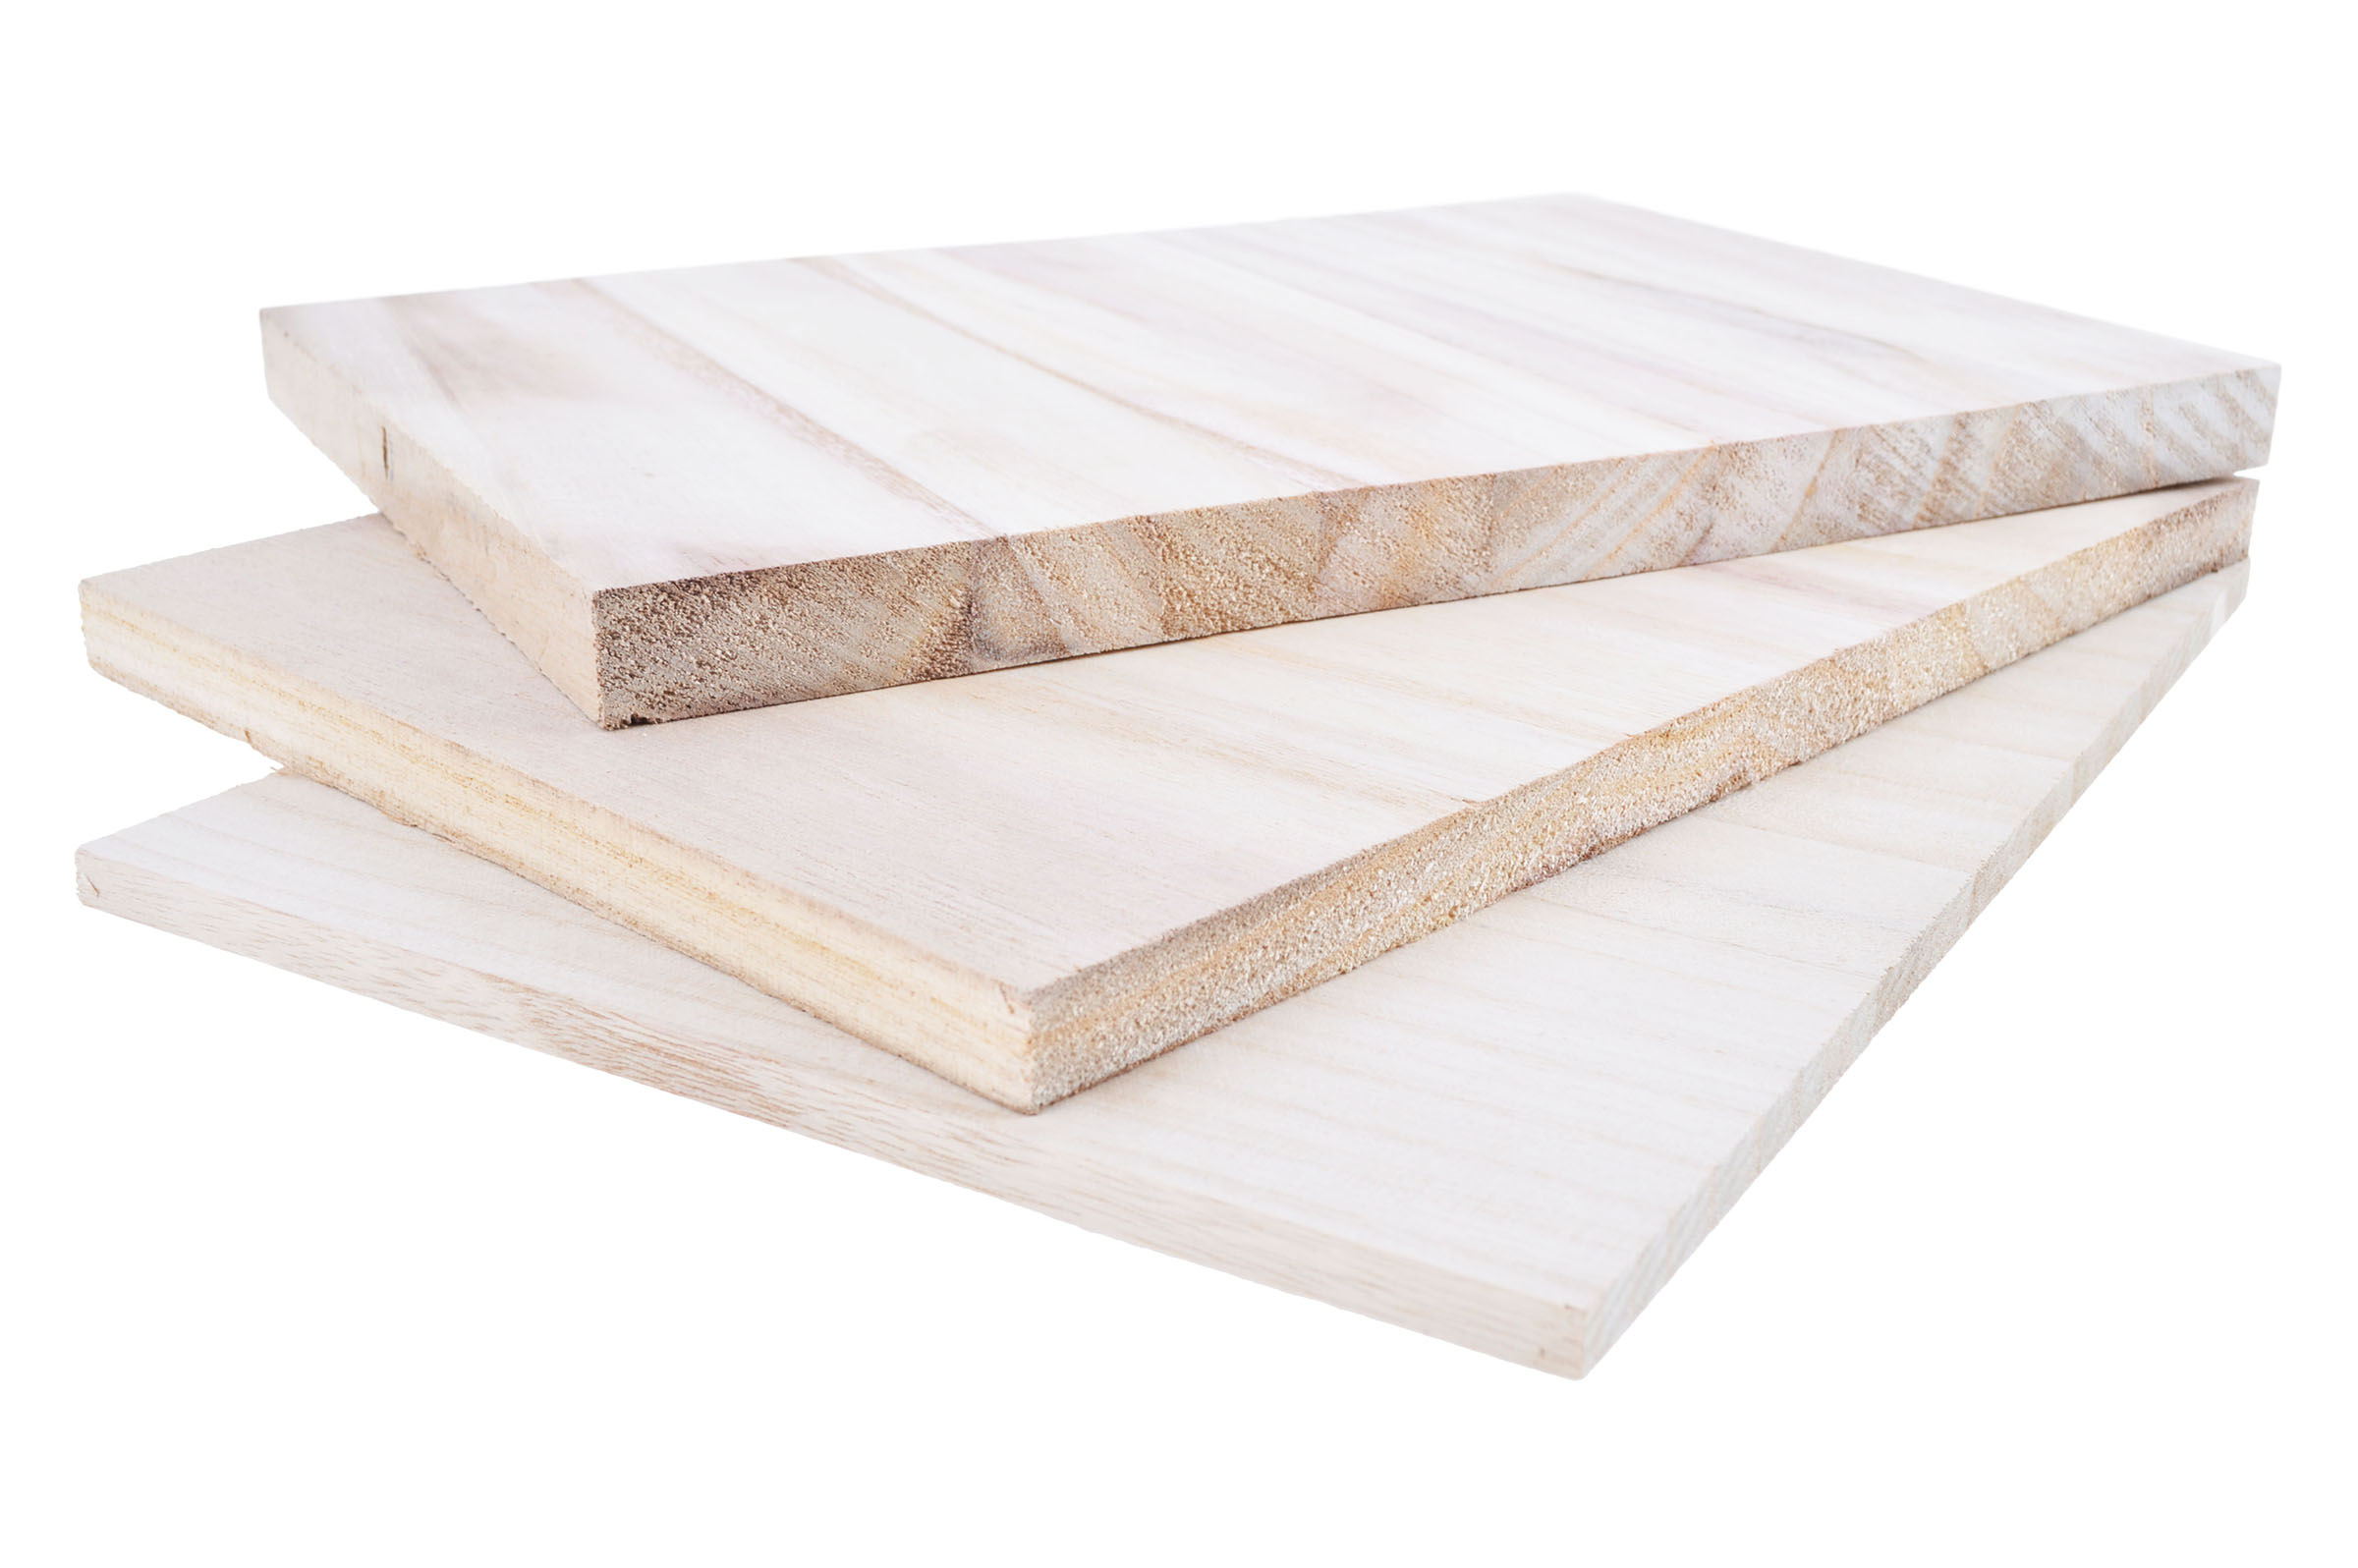 64 pcs 12 mm Wood Breaking Boards 